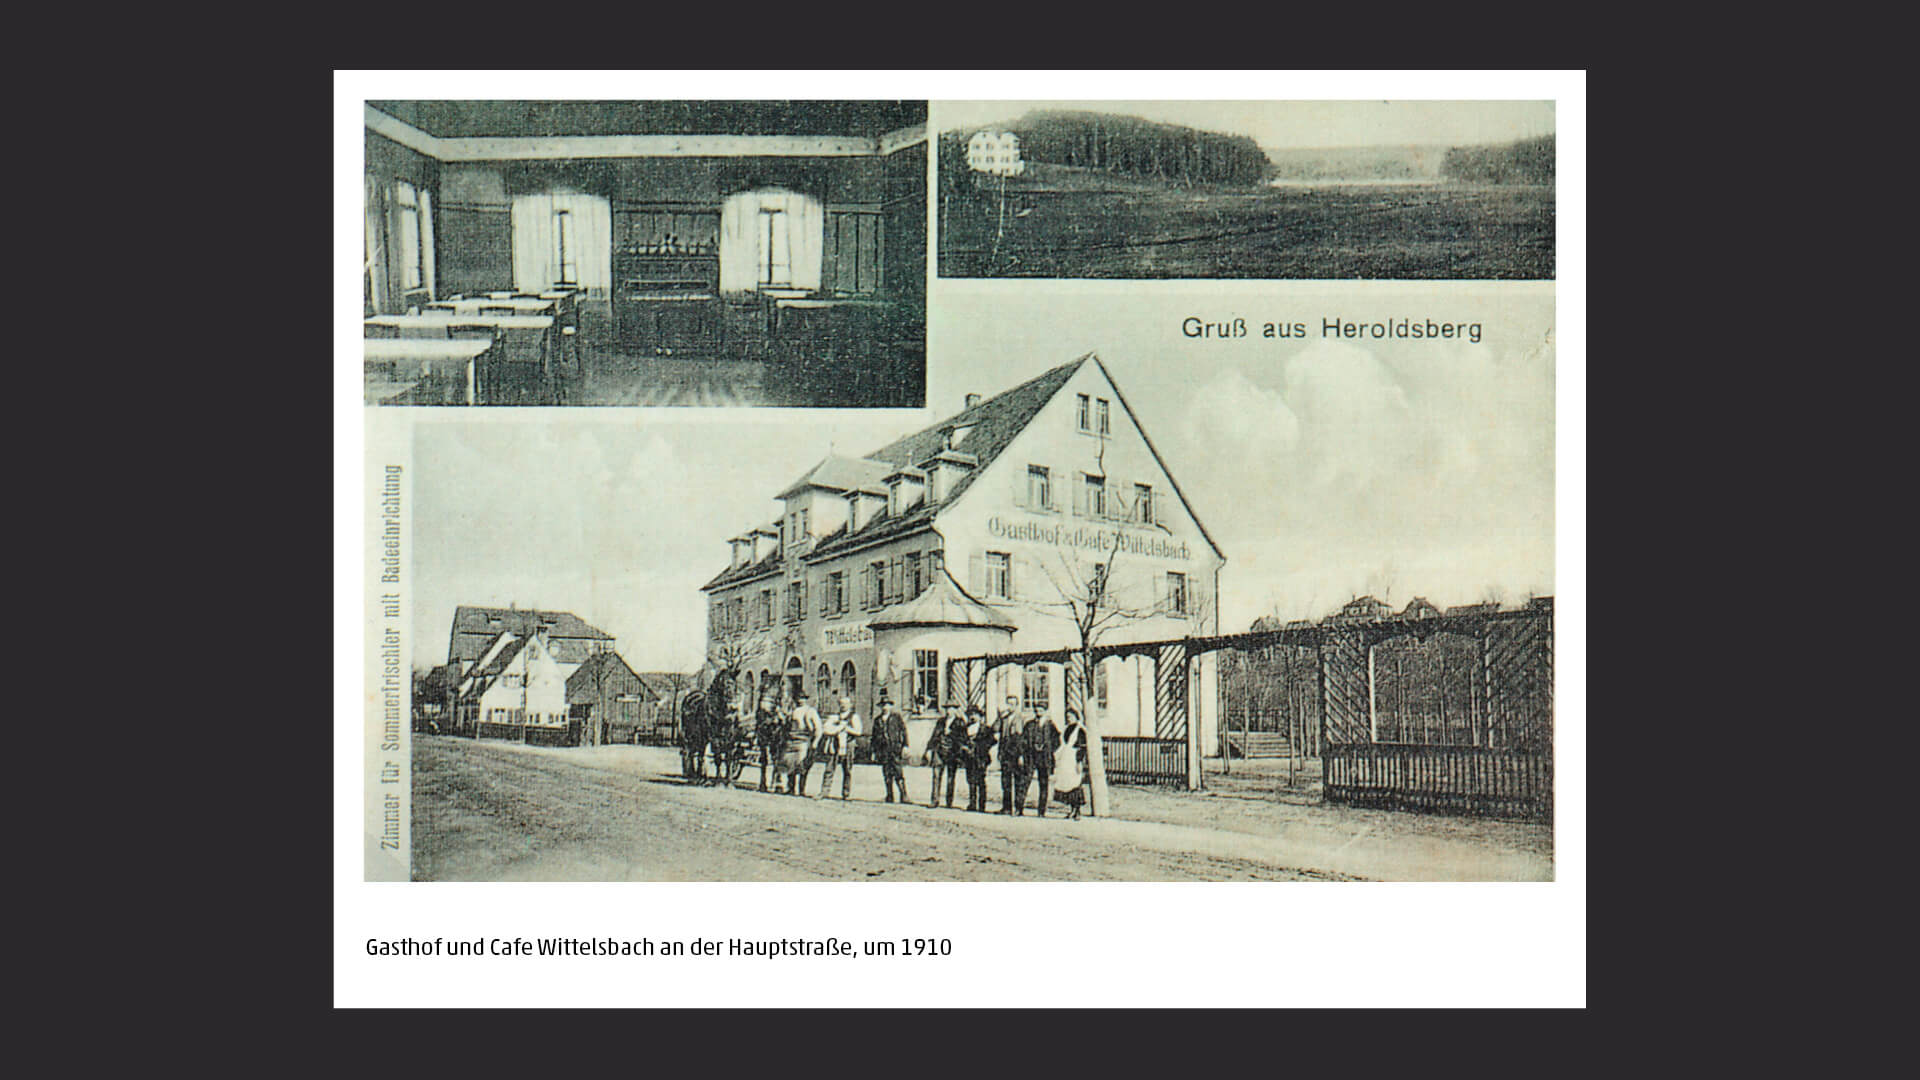 Gasthof und Cafe Wittelsbach an der Hauptstraße, Heroldsberg, um 1910